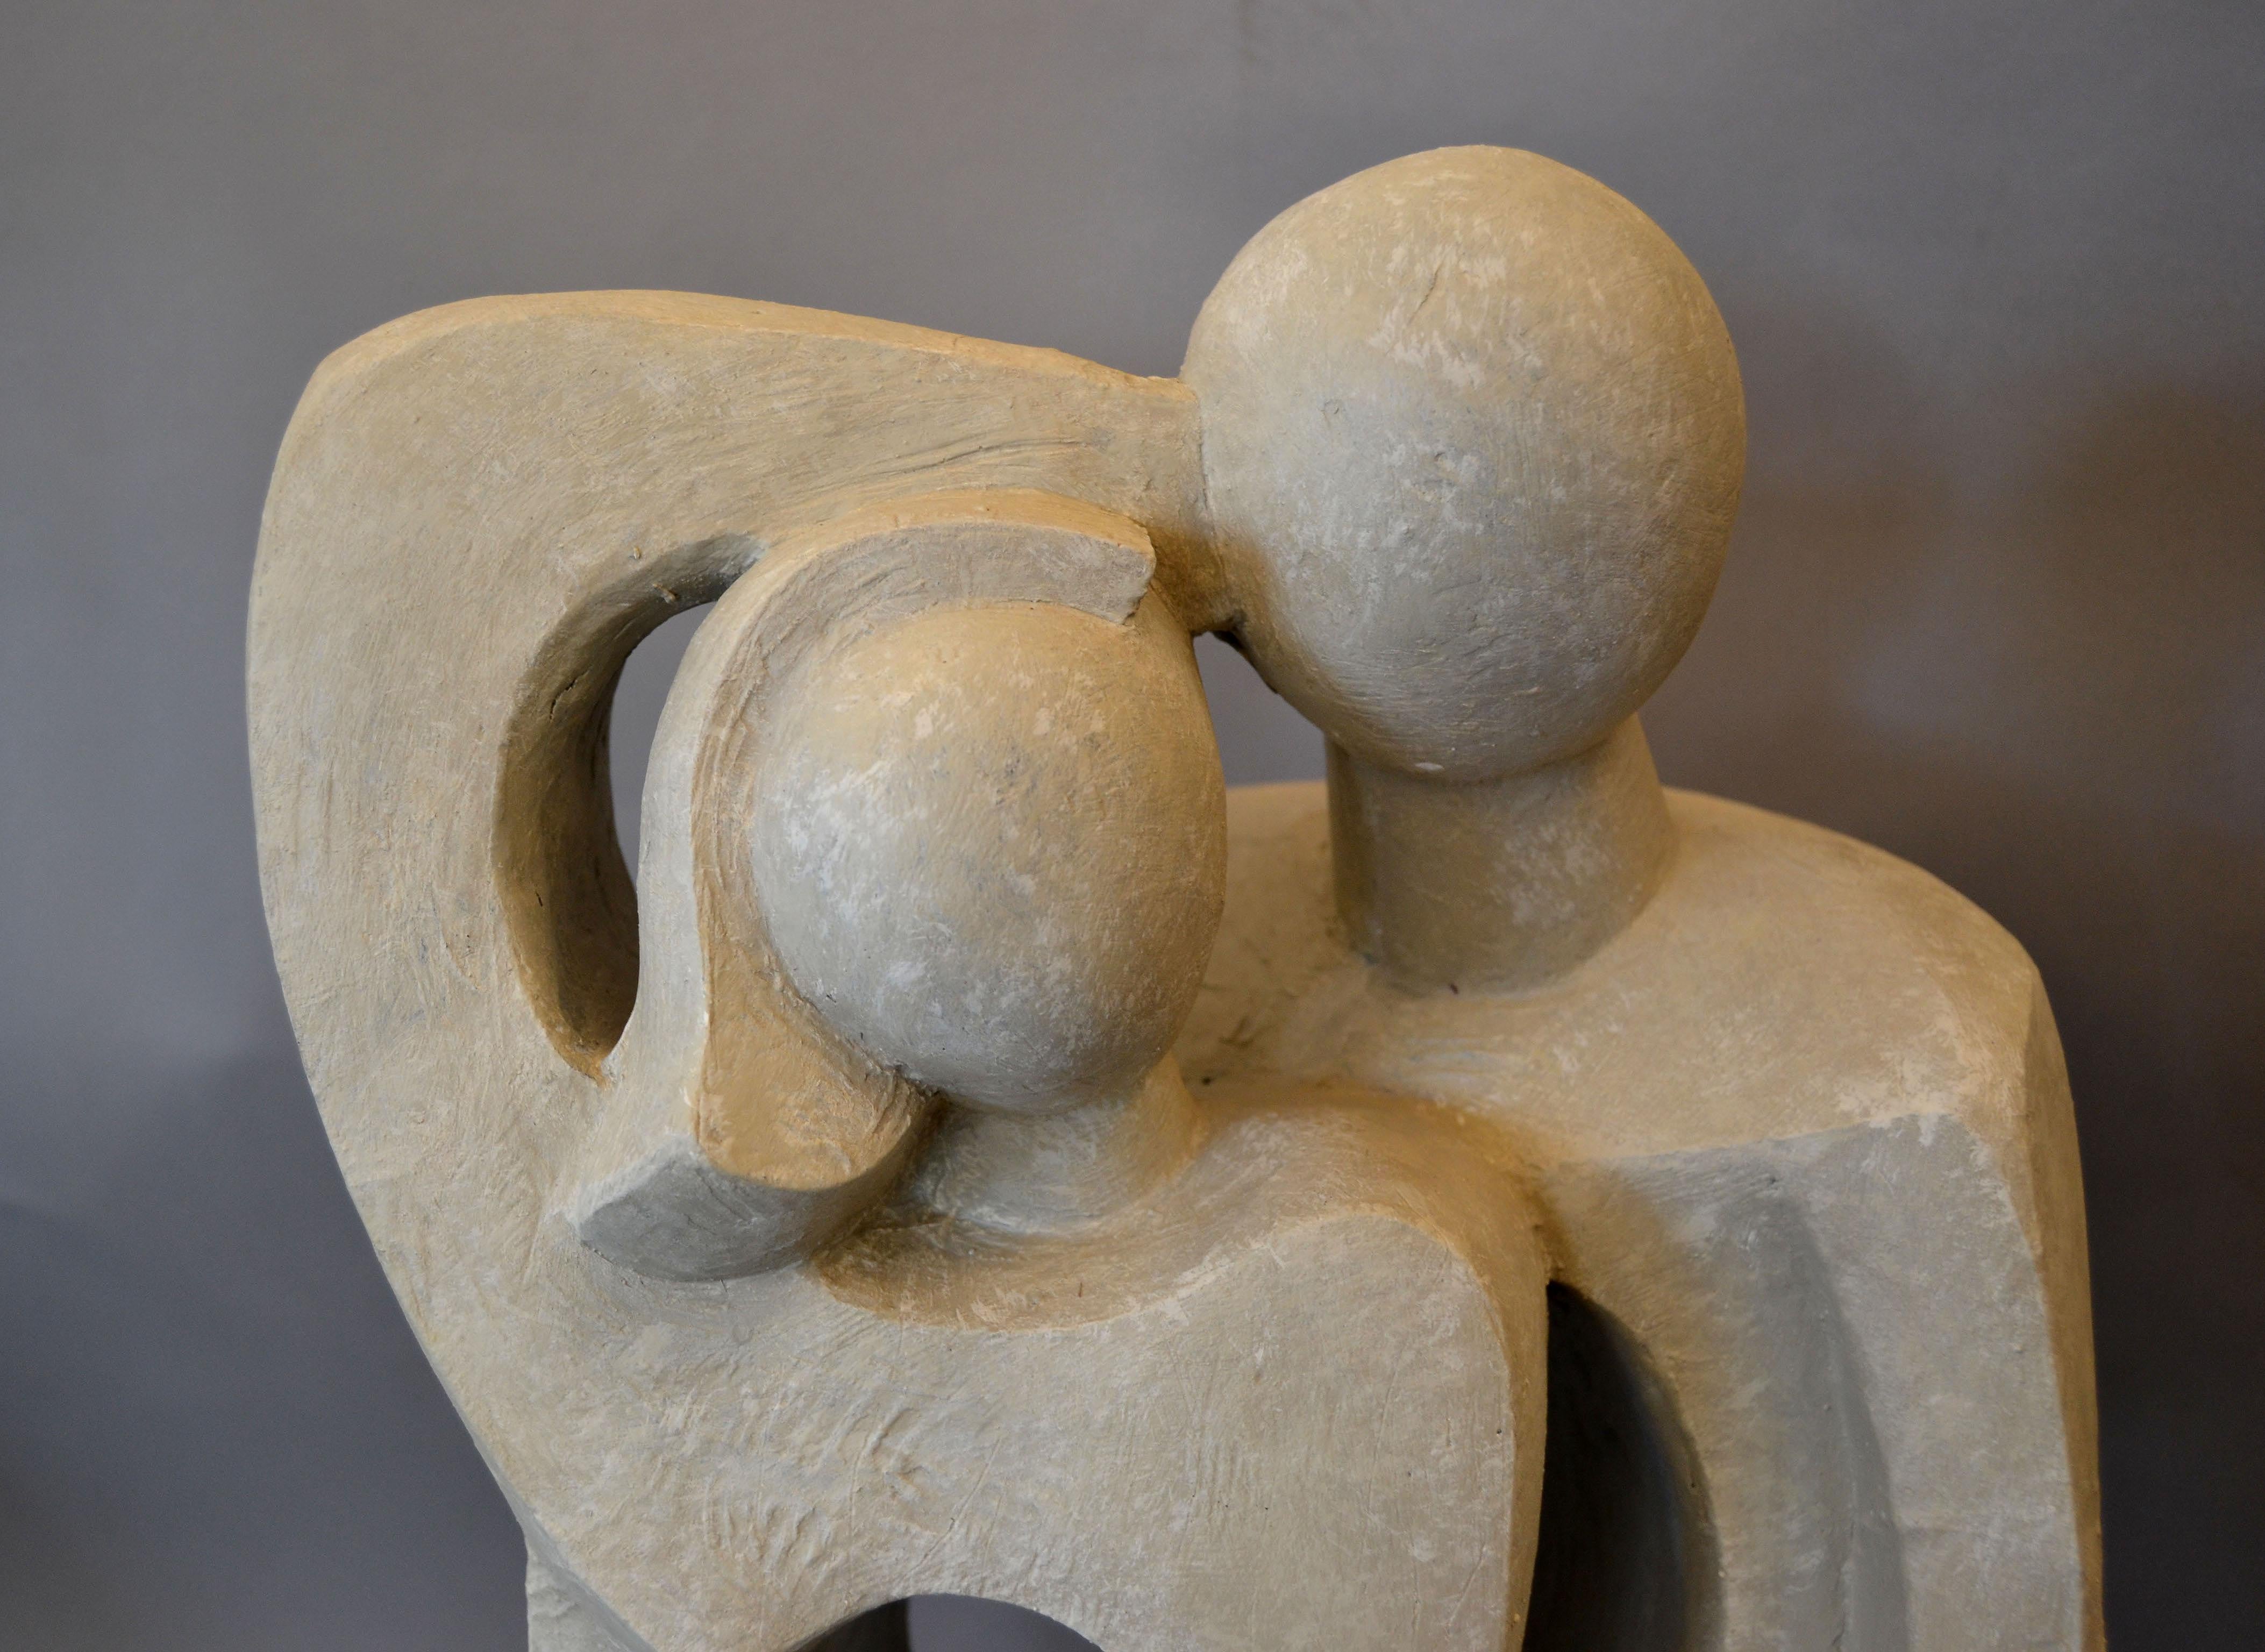 Abstrait moderne Géométrique stylisé embrassant le couple amoureux sculpture, figurine, statue en plâtre gris.
Très minimaliste, avec des lignes claires, il reste gracieux.